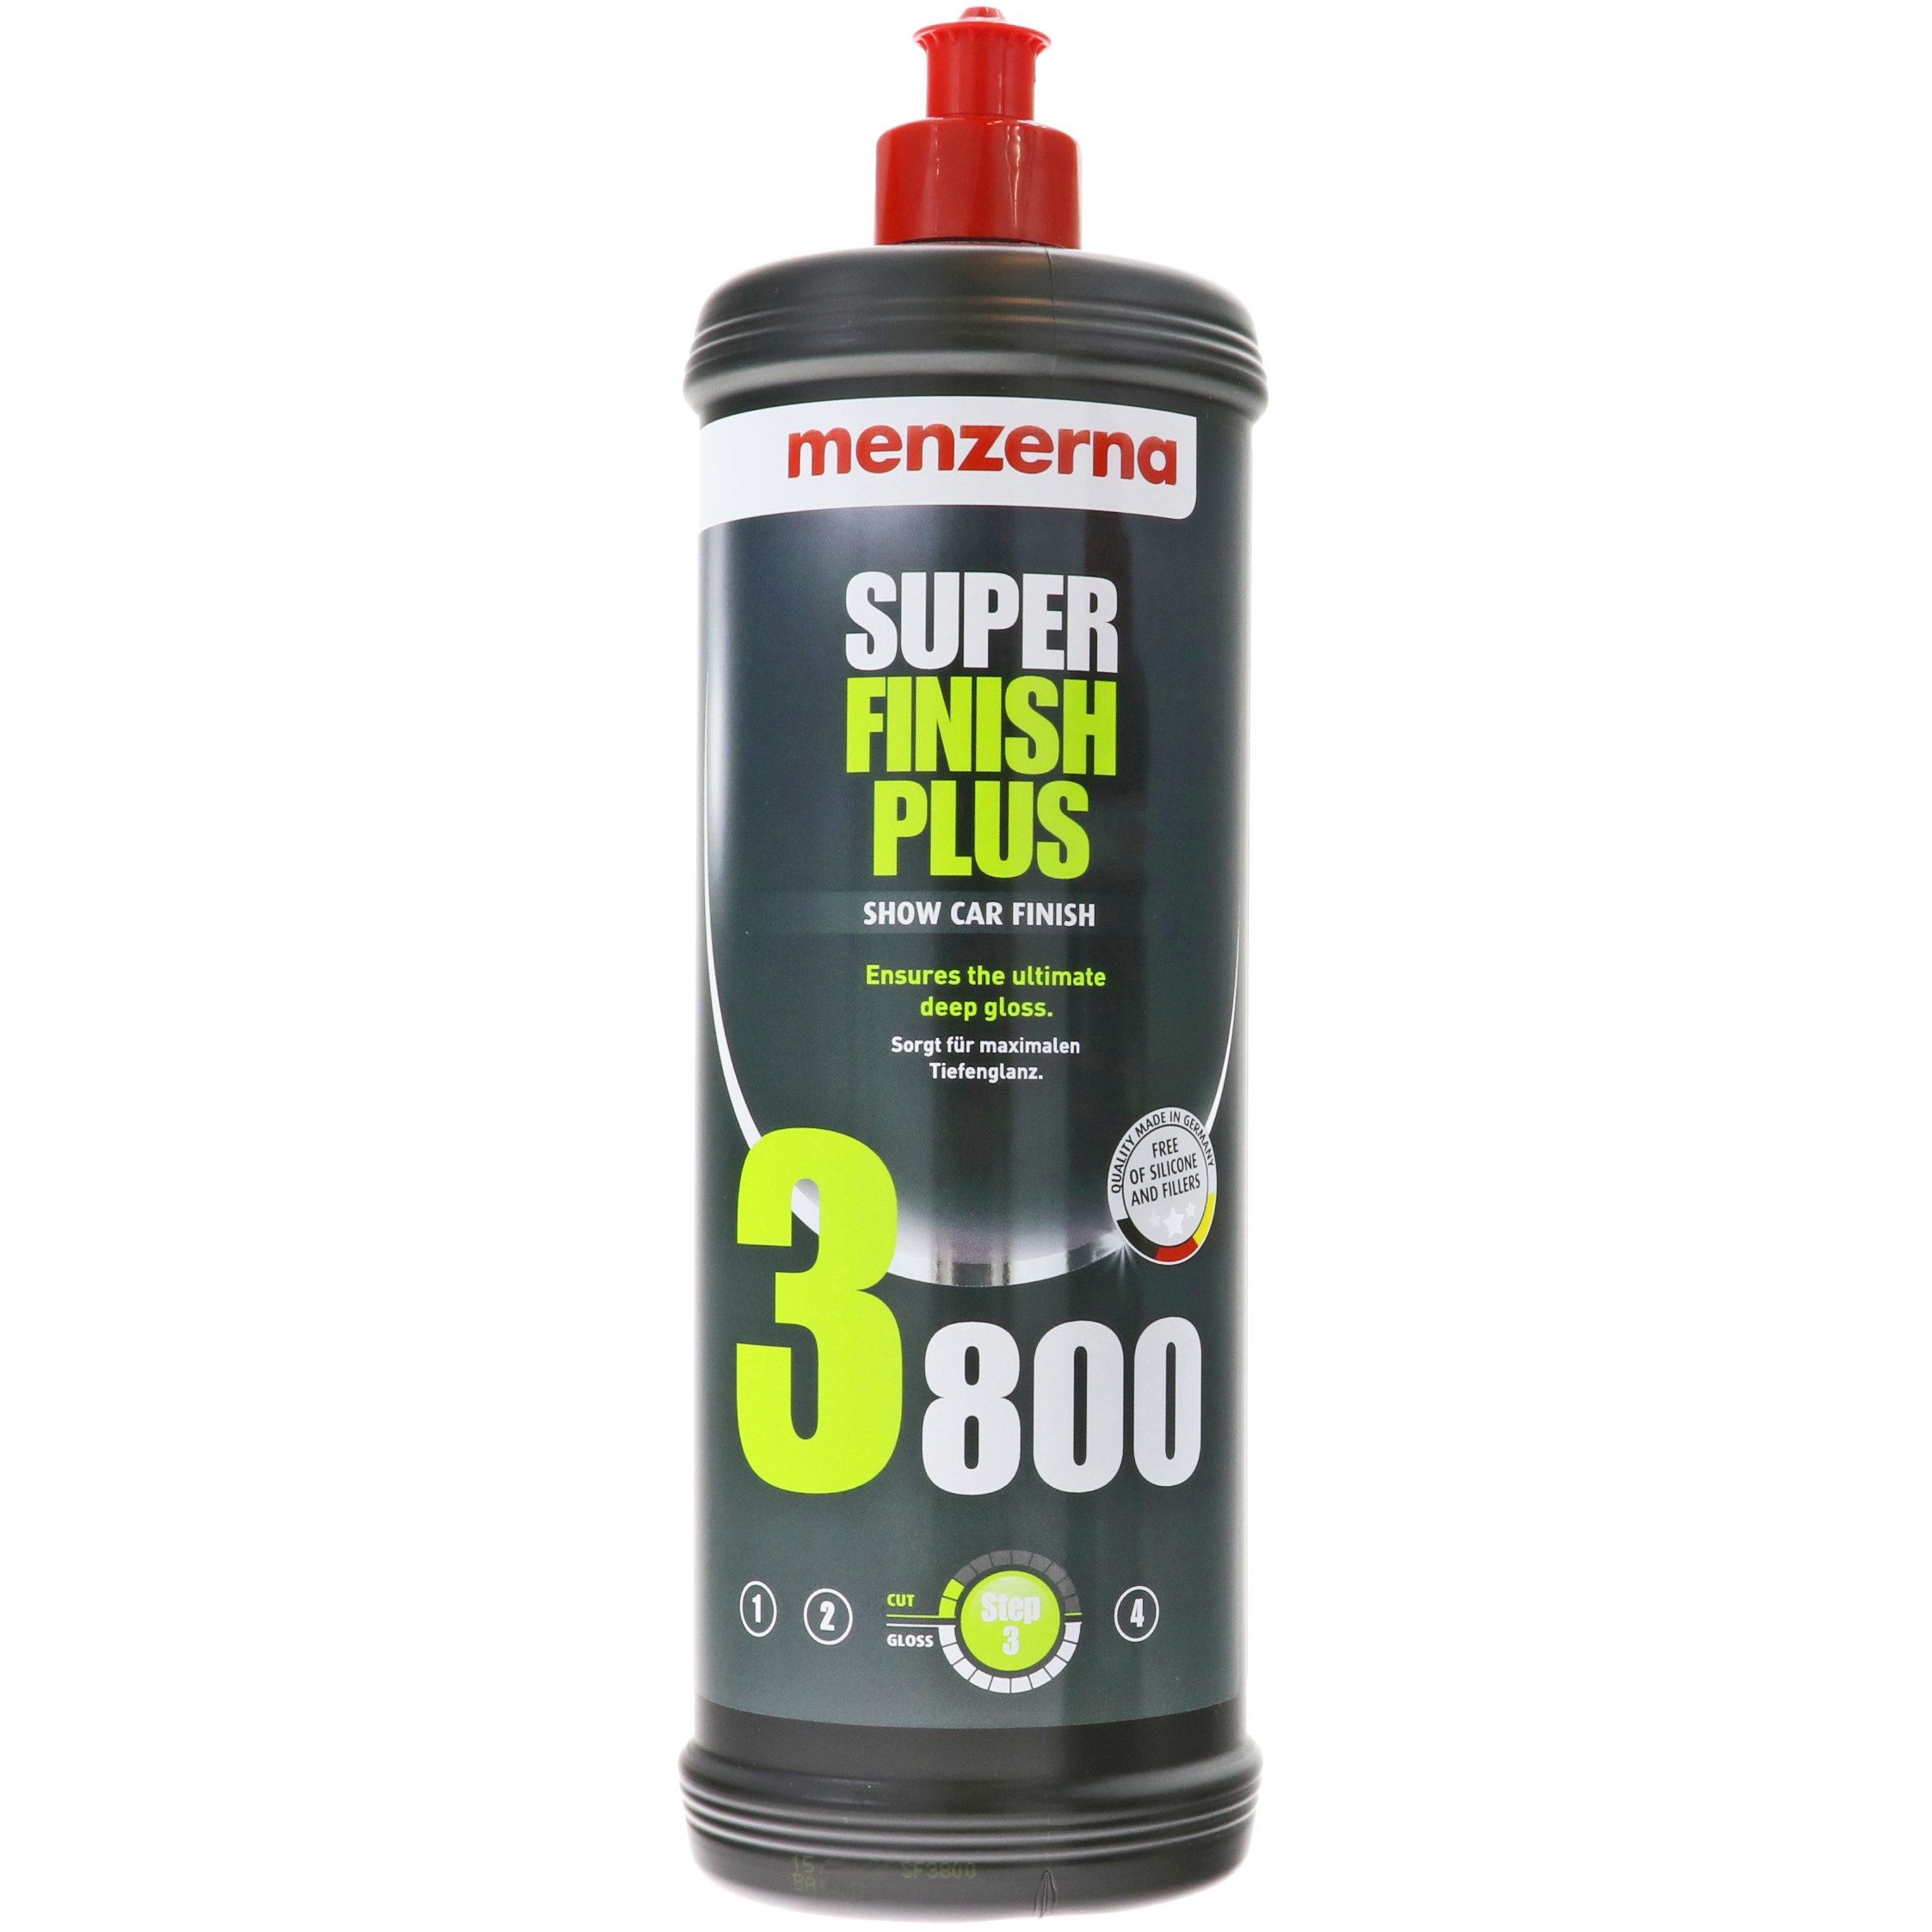 Super Finish Plus 3800 - 1000ml